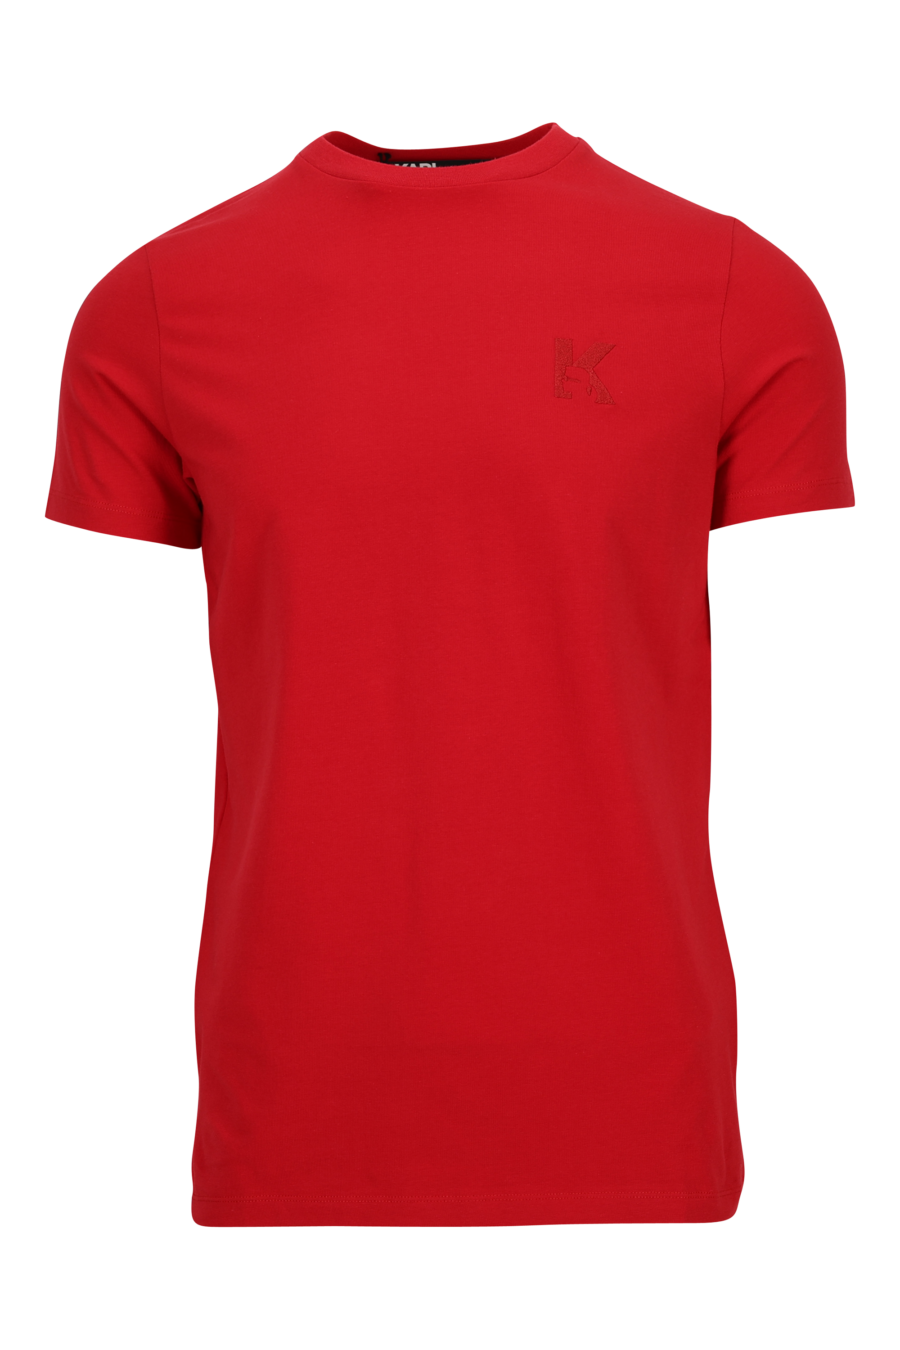 Camiseta roja con minilogo monocromático - 4062226789615